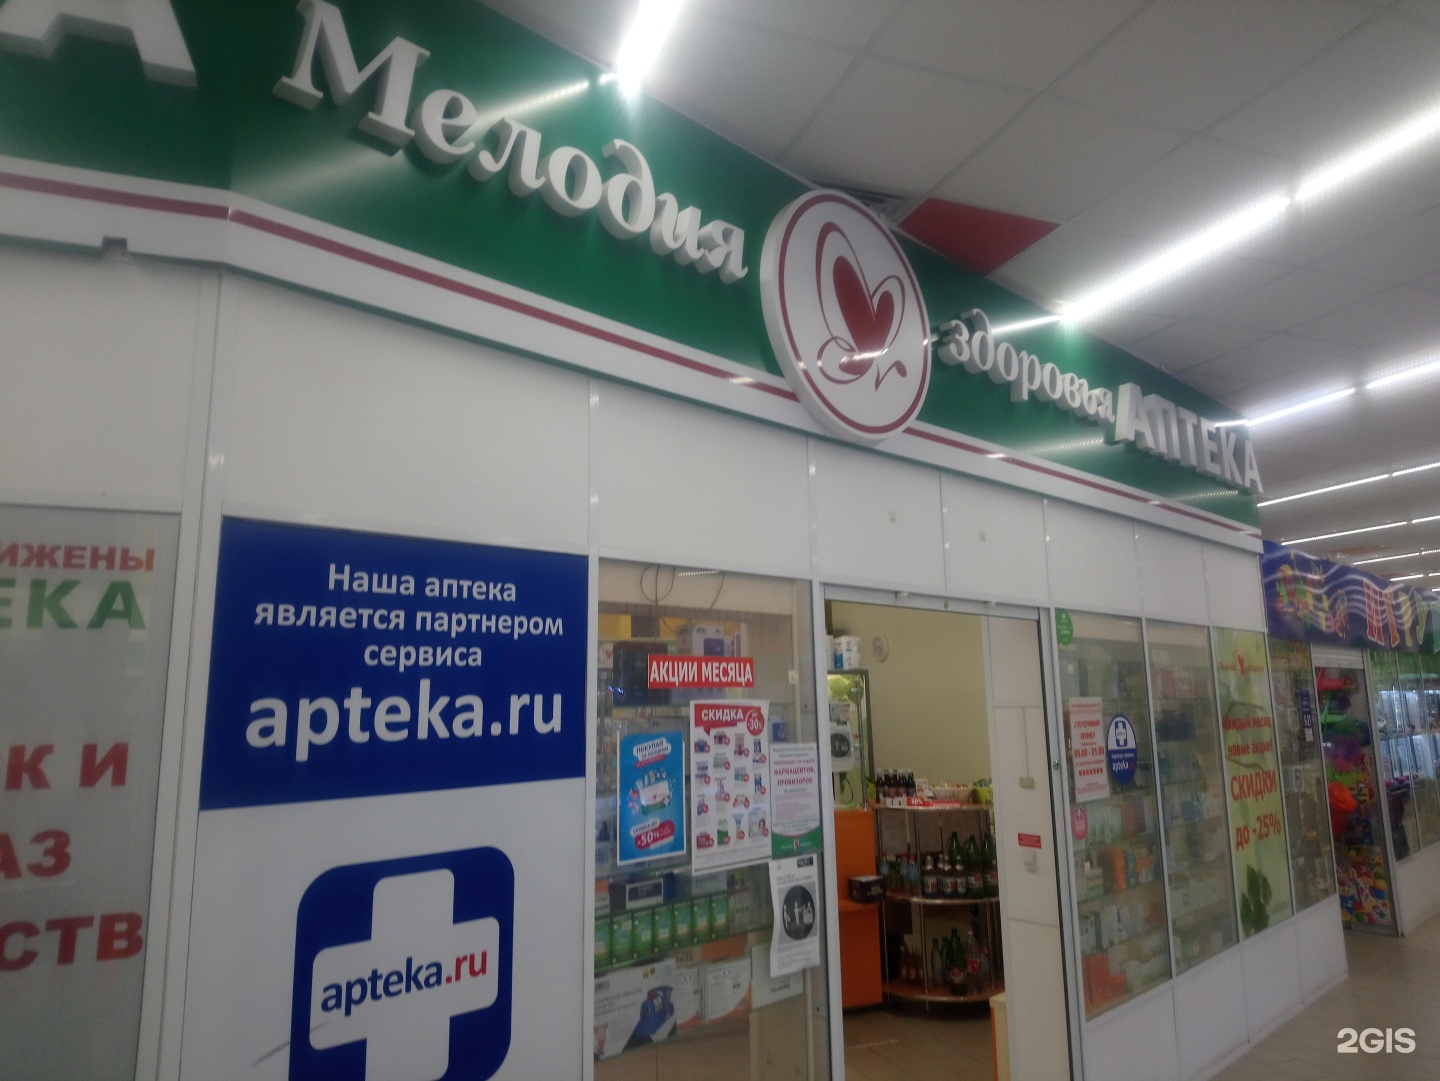 Мелодия здоровья аптека. Телефон аптечной сети мелодия здоровья. Мелодия здоровья аптечная сеть Новосибирск телефон. Аптека мелодия здоровья логотип.